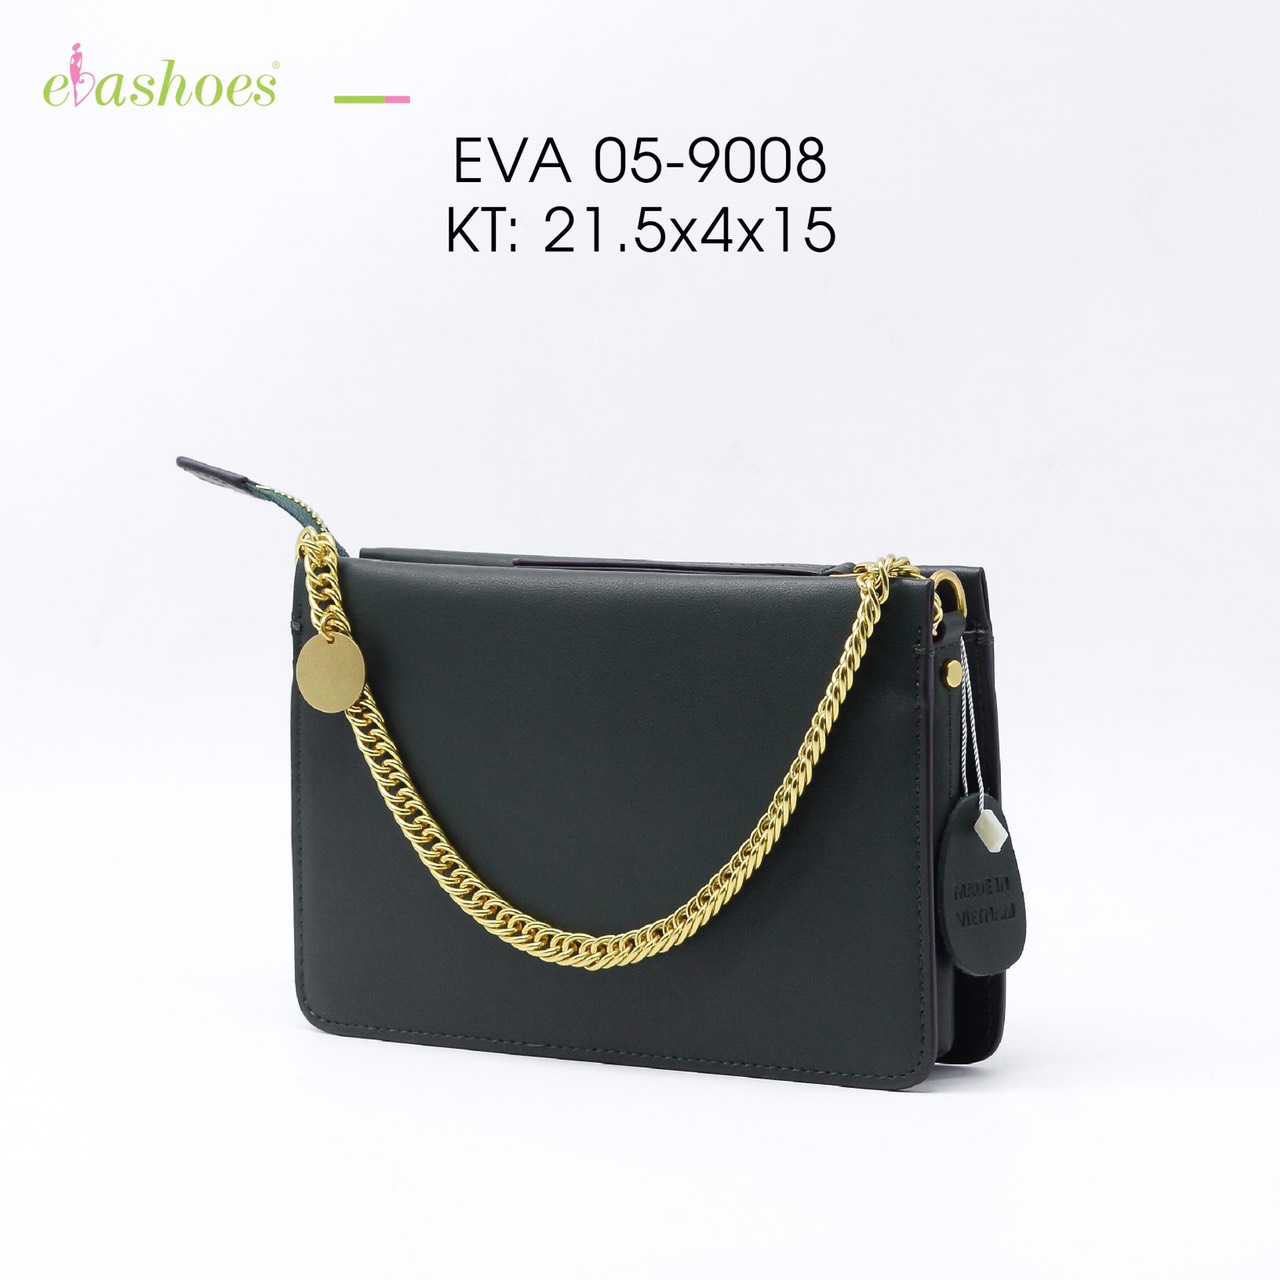 Túi xách EVA05-9008